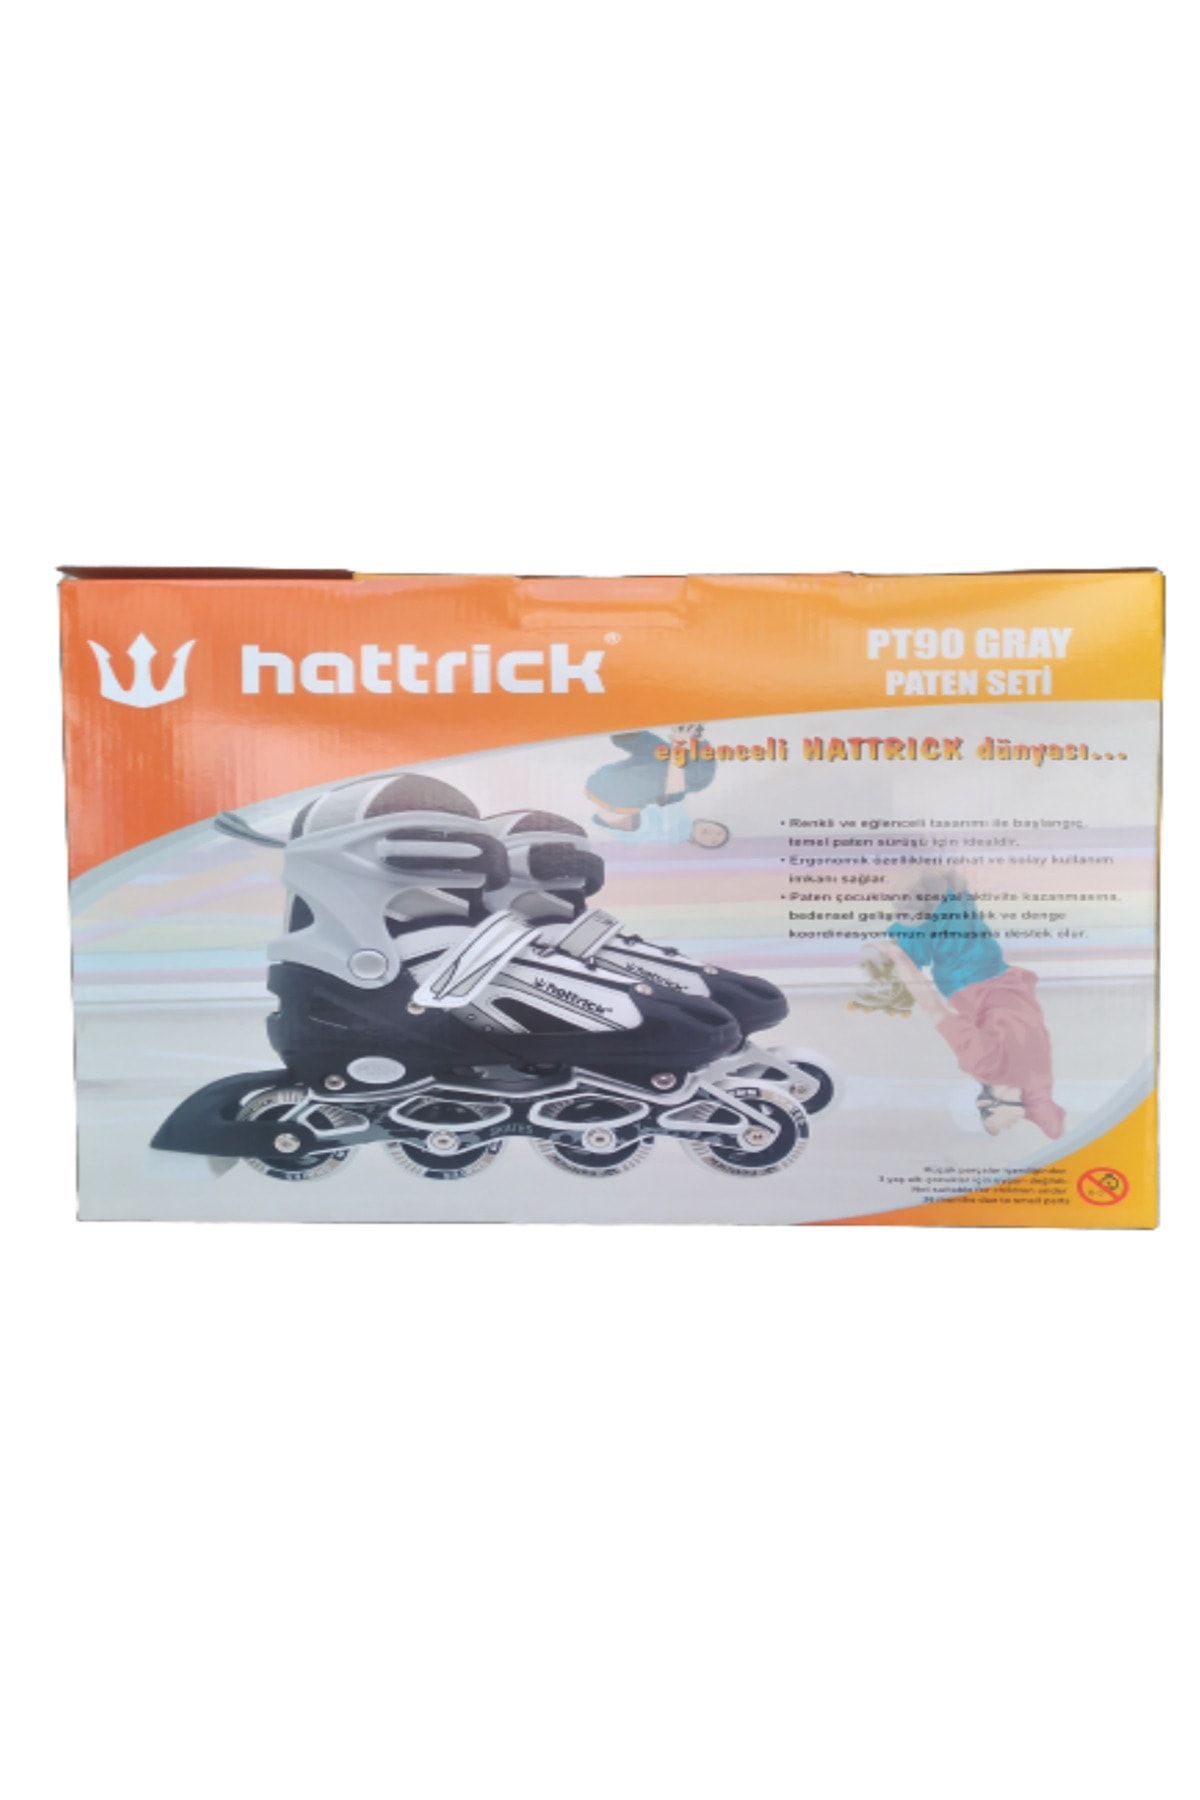 Hattrick Sportica Hattirick Ayarlanabilen Alüminyum Şase silikon tekerli ışıklı paten. (38-41 Numara)